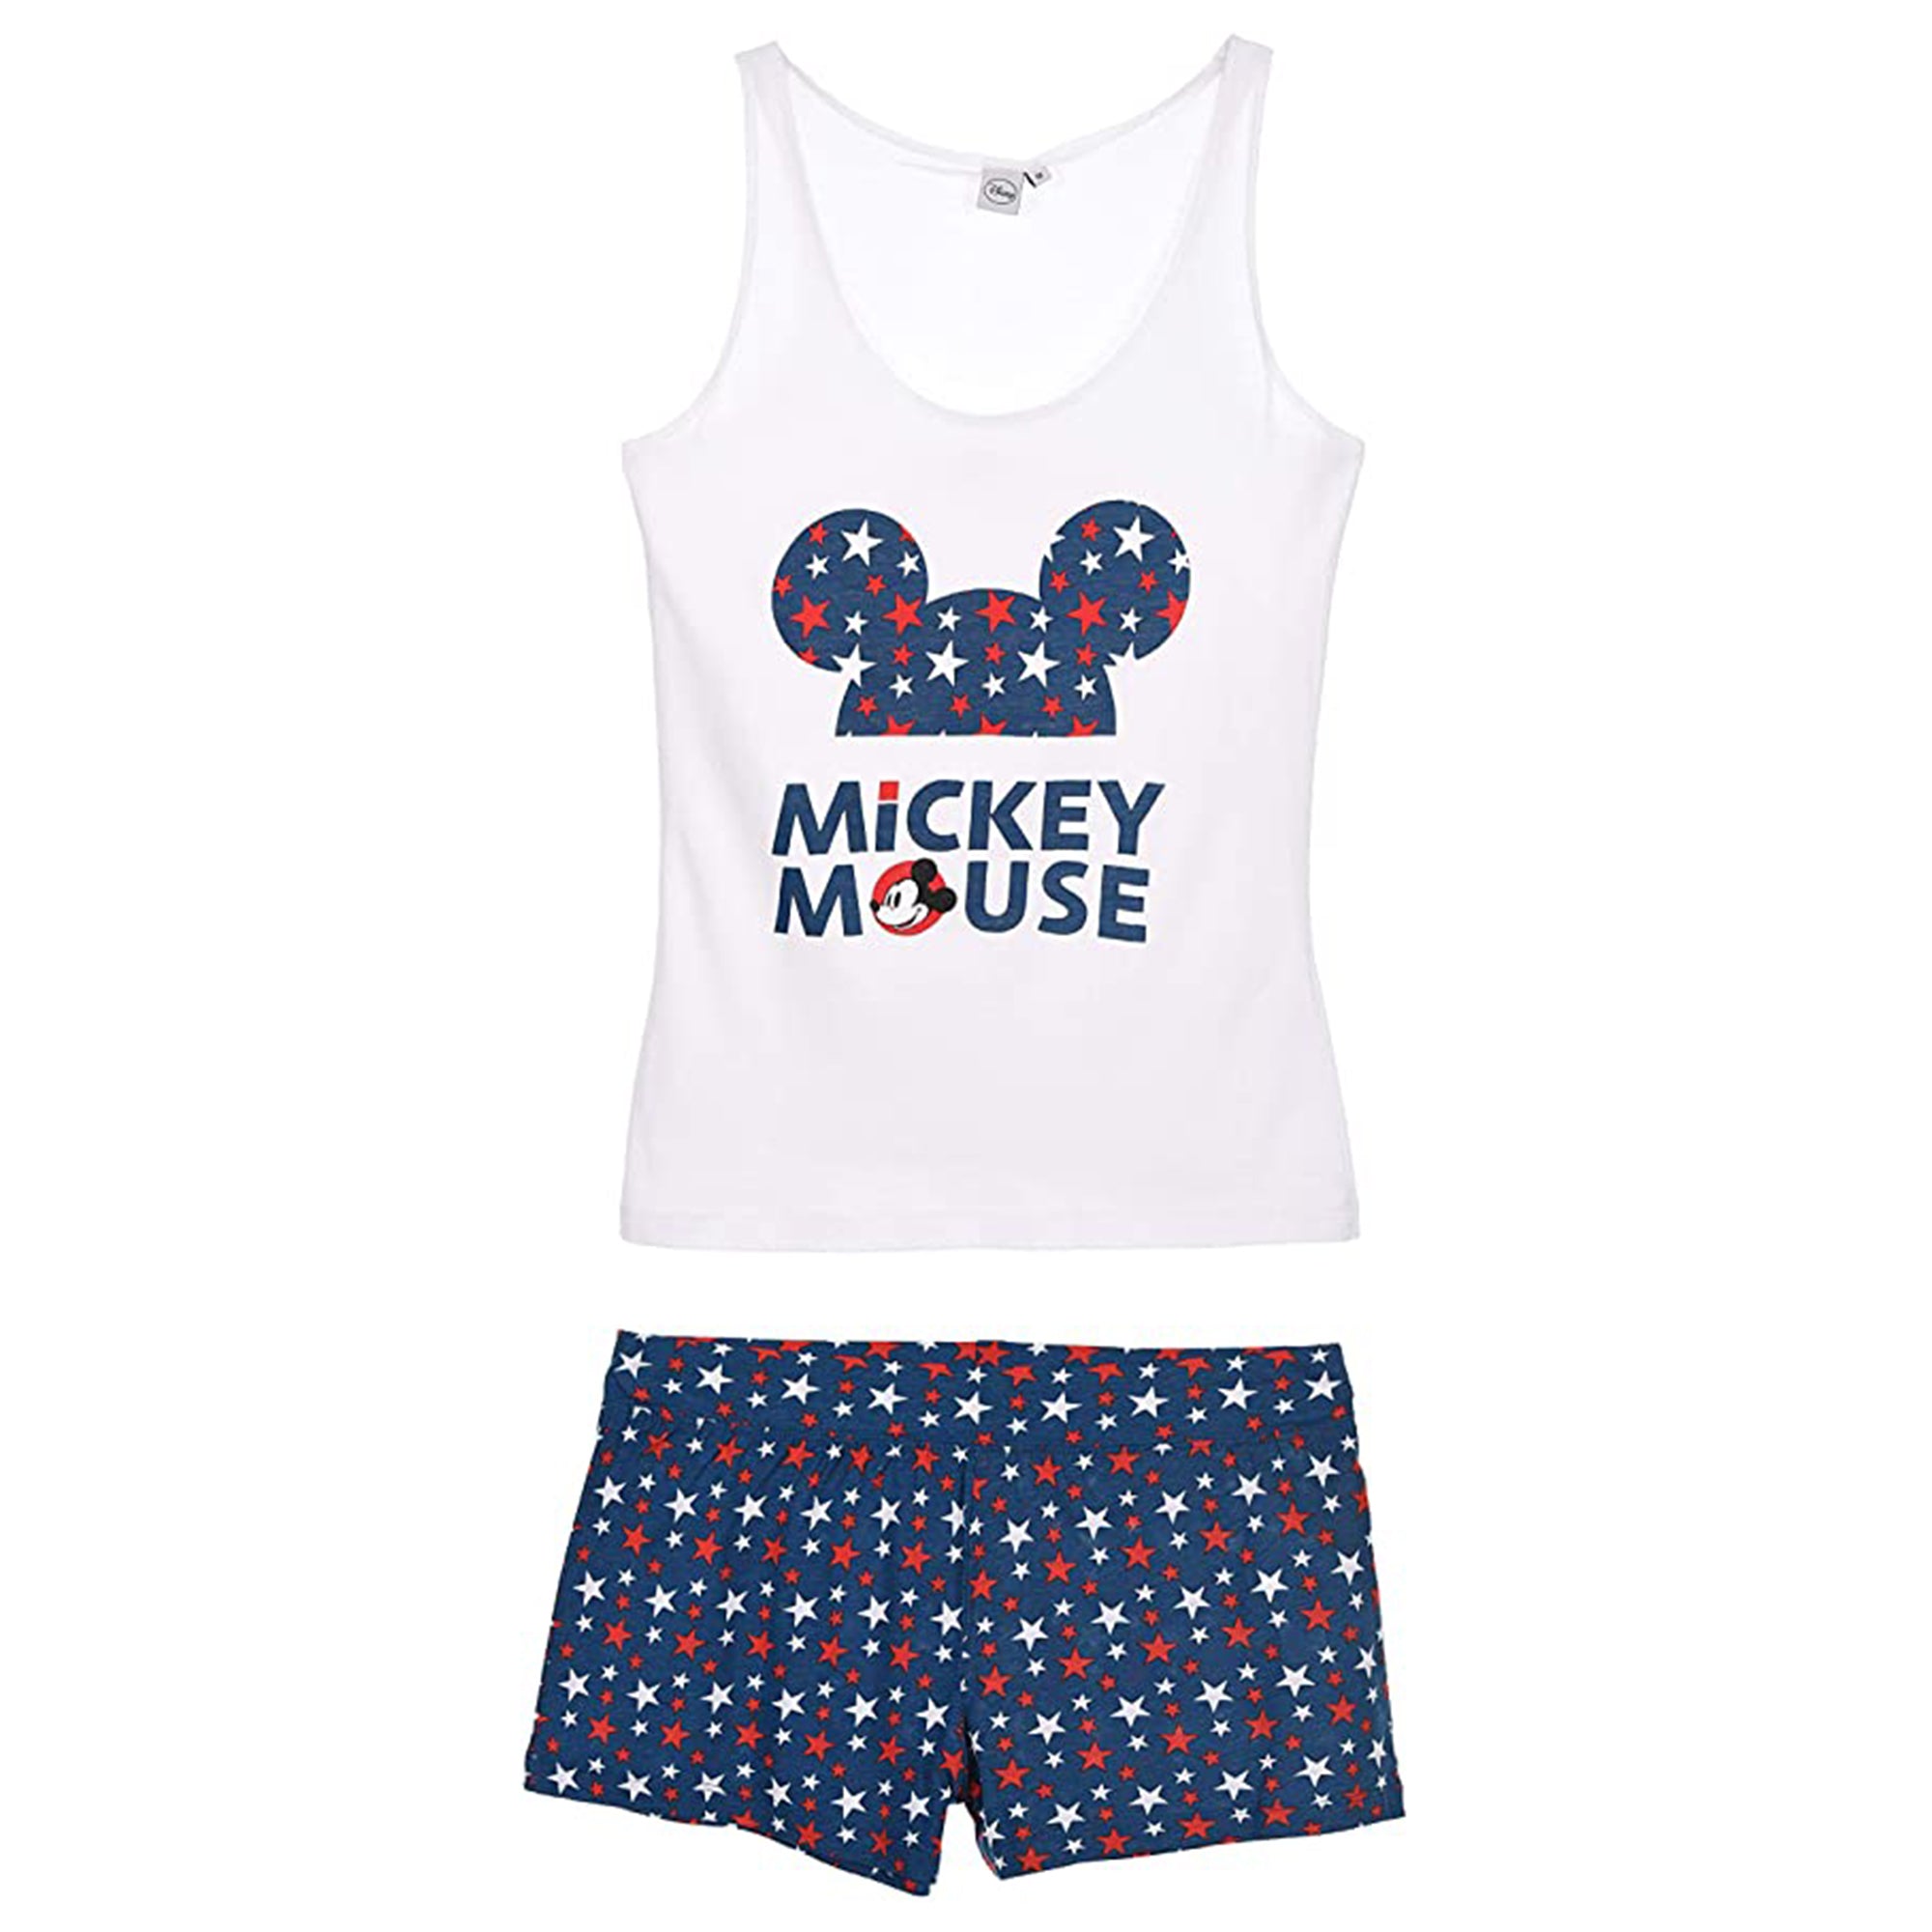 Pigiama corto donna Disney Mickey Mouse canotta e pantaloncino in cotone 2896